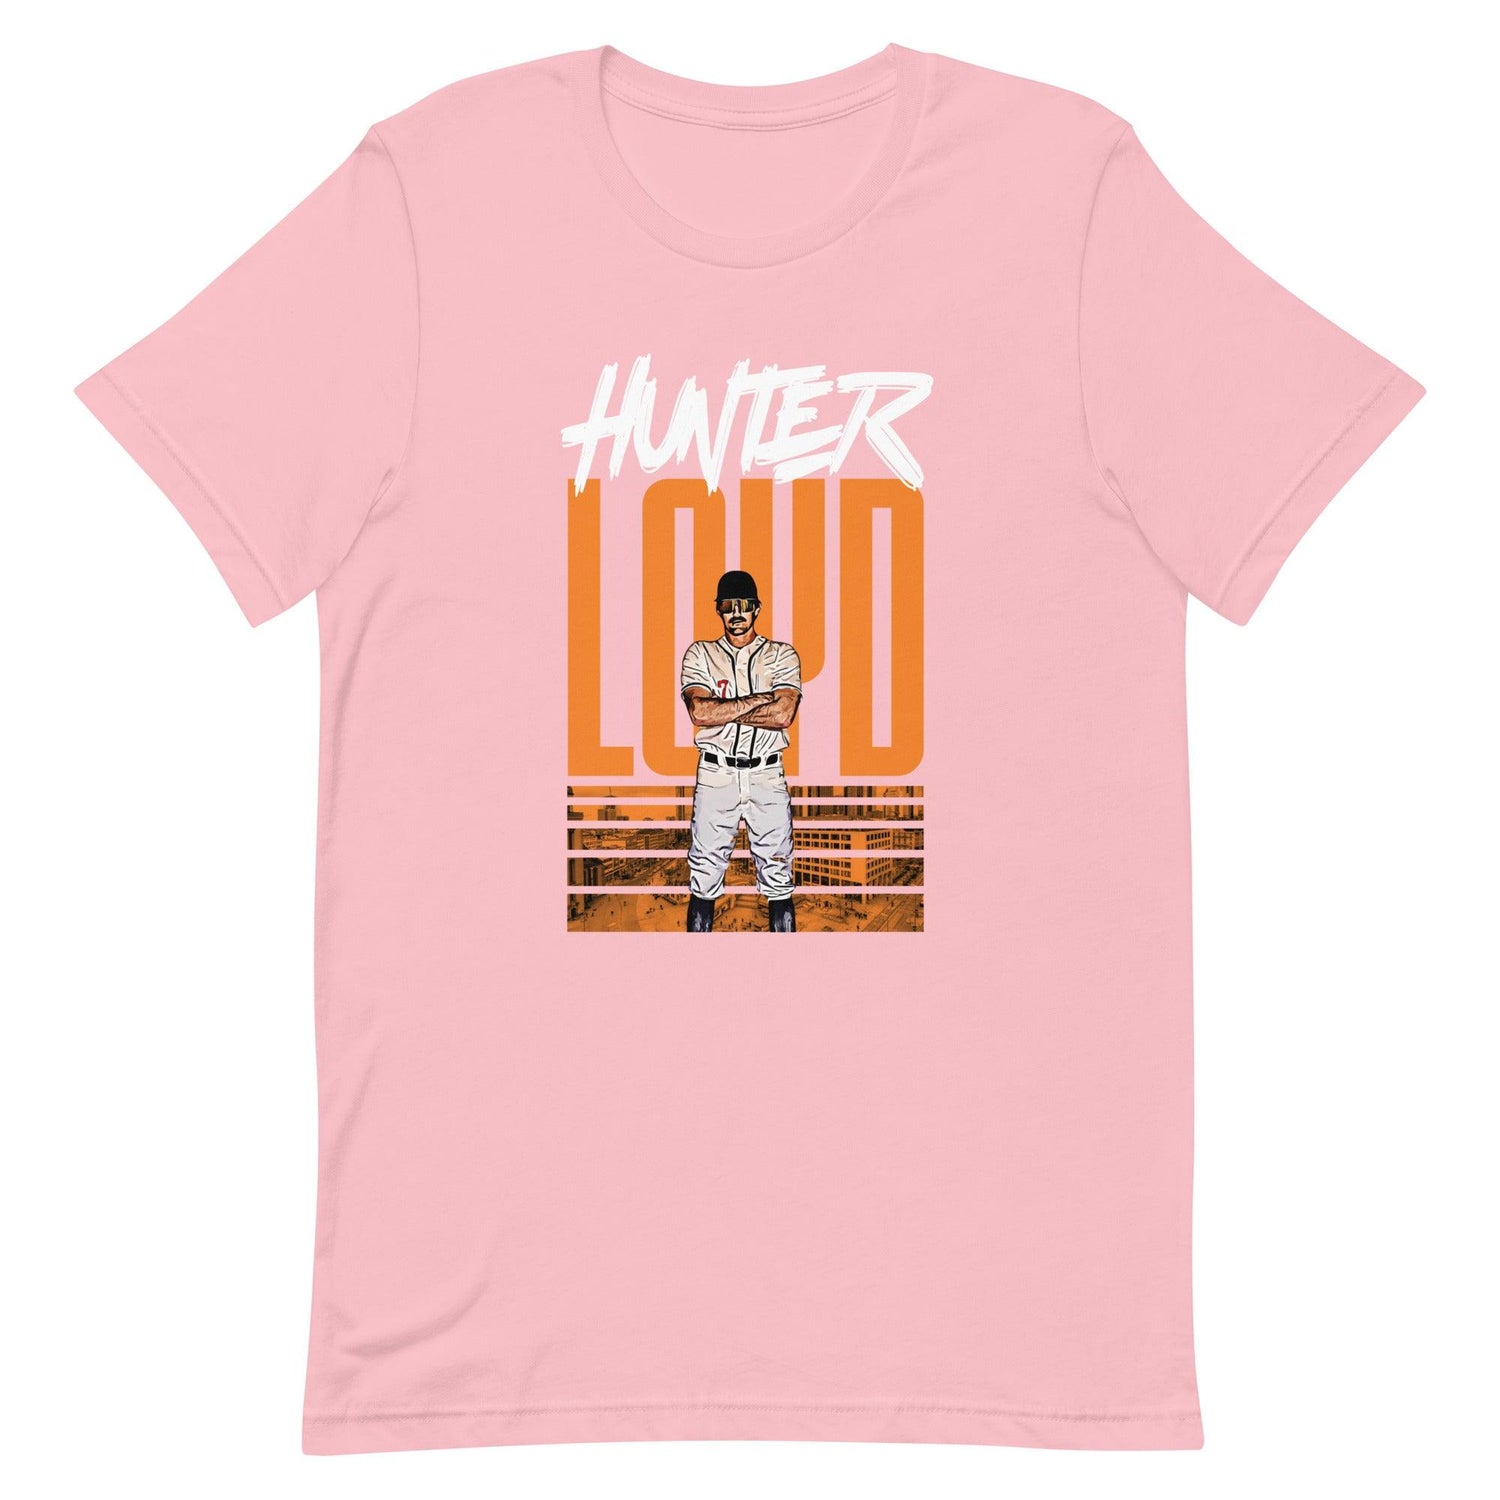 Hunter Loyd "Gameday" t-shirt - Fan Arch